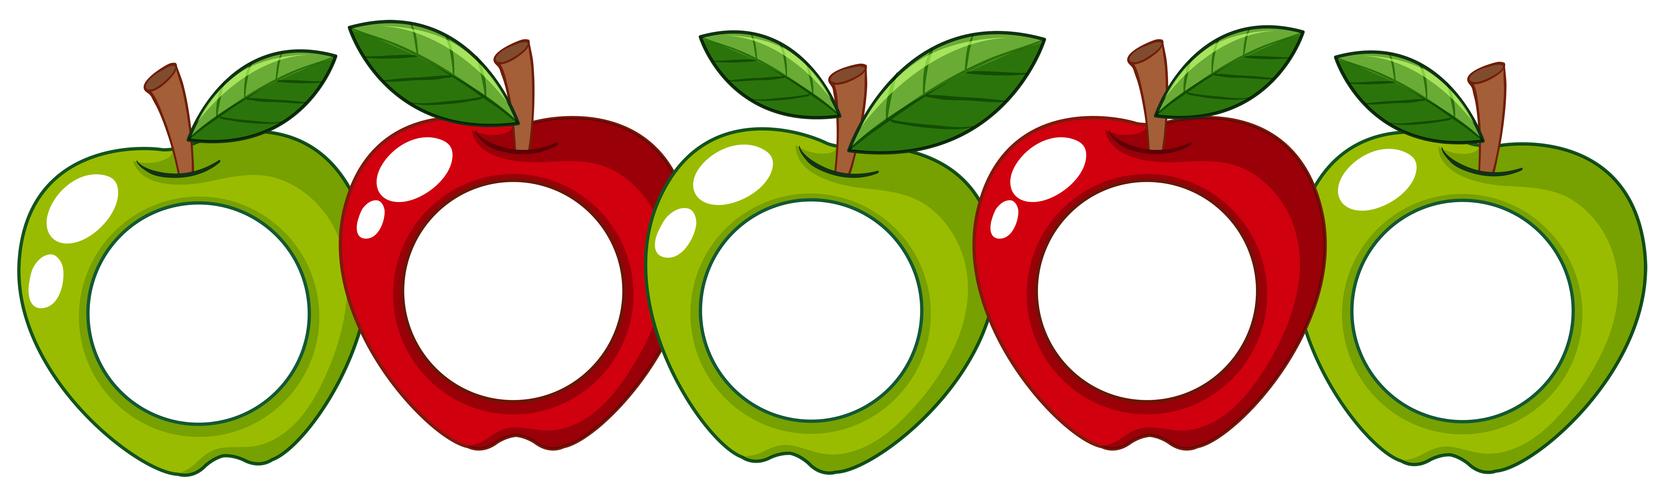 Rode en groene appels met witte badge op vector